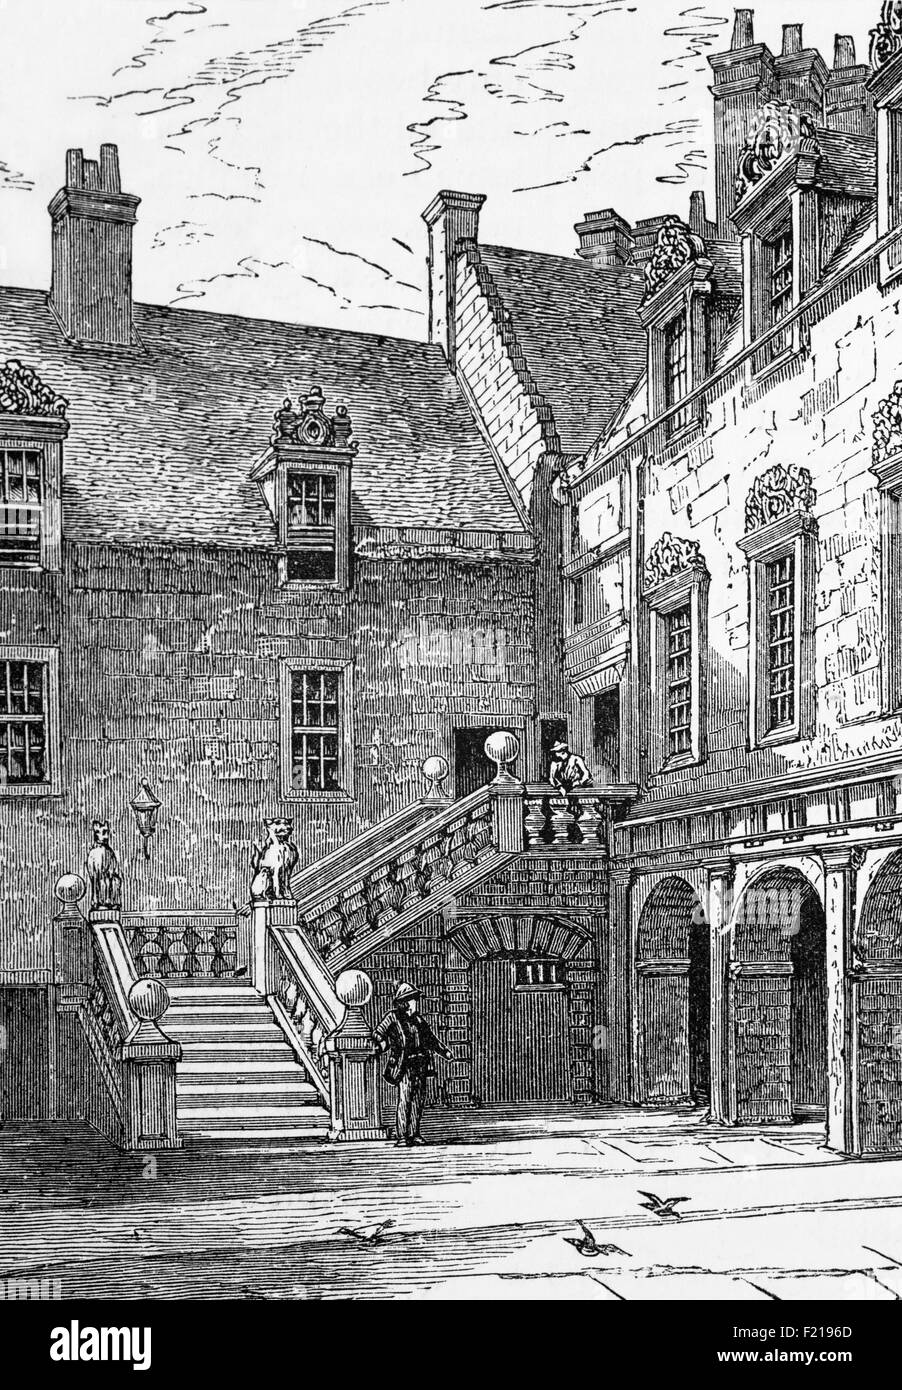 Das Principal's House in der University of Glasgow wurde 1451 gegründet. Ursprünglich in der High Street gelegen, befindet sich der Hauptcampus seit 1870 auf Gilmorehill im West End der Stadt. Es ist die viertälteste Universität in der englischsprachigen Welt und eine von Schottlands vier alten Universitäten, Edinburgh, Aberdeen und St Andrews, und Teil der schottischen Aufklärung während des 18th. Jahrhunderts. Stockfoto